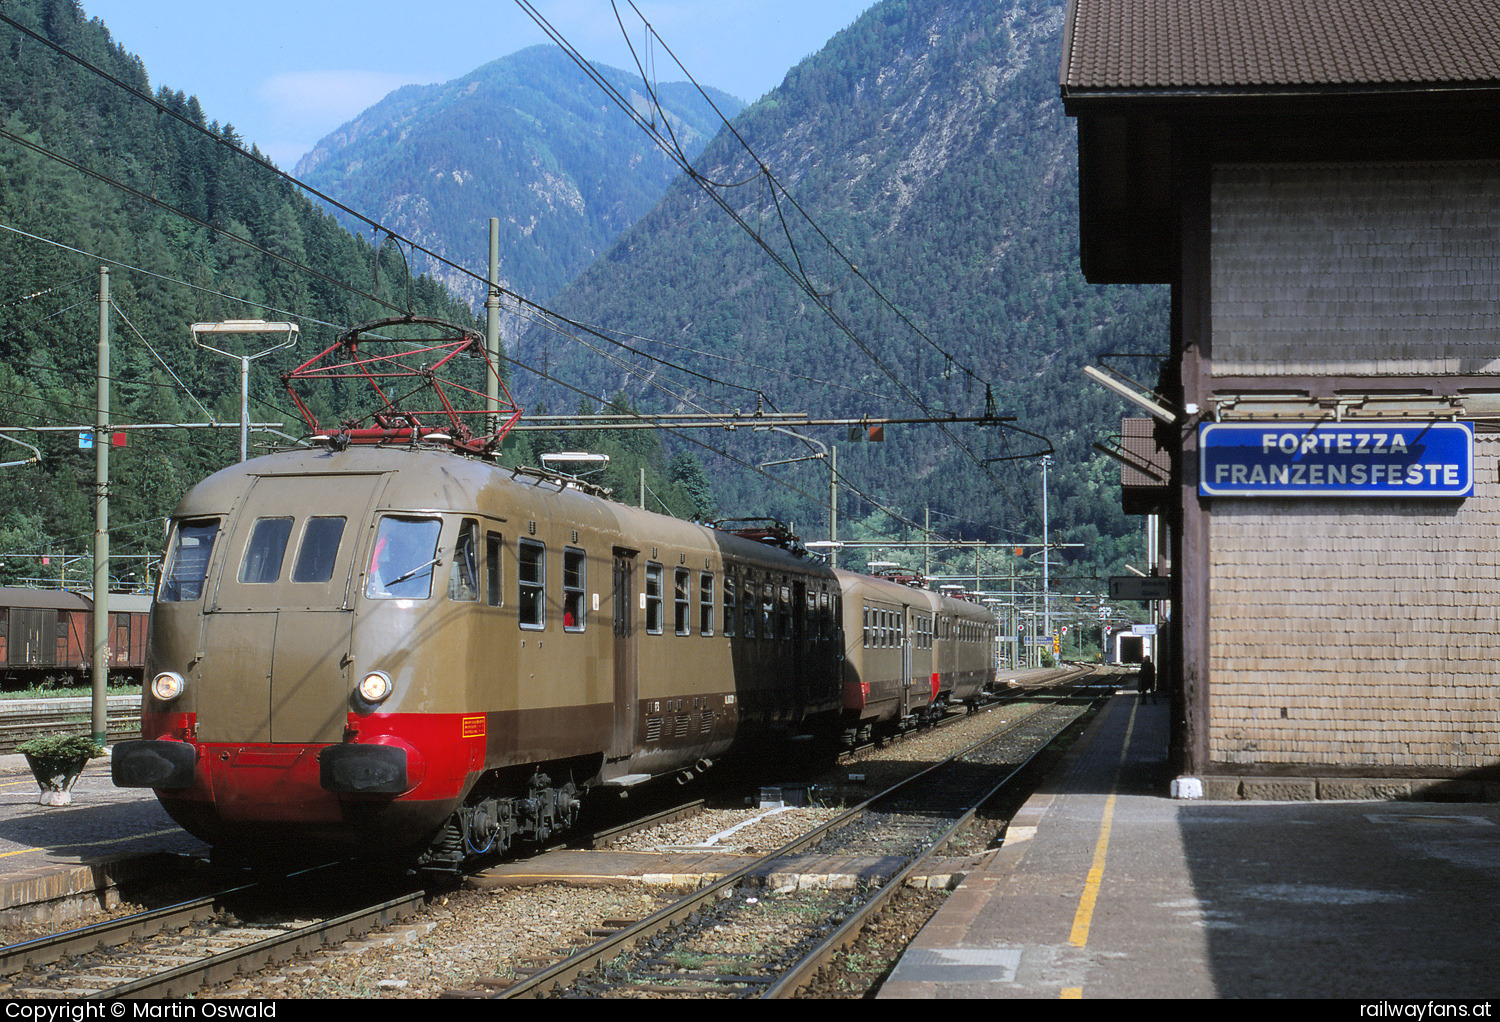 Ferrovie dello Stato Italiane (FS) Ale 840 5416 in Fortezza/Franzensfeste  Railwayfans